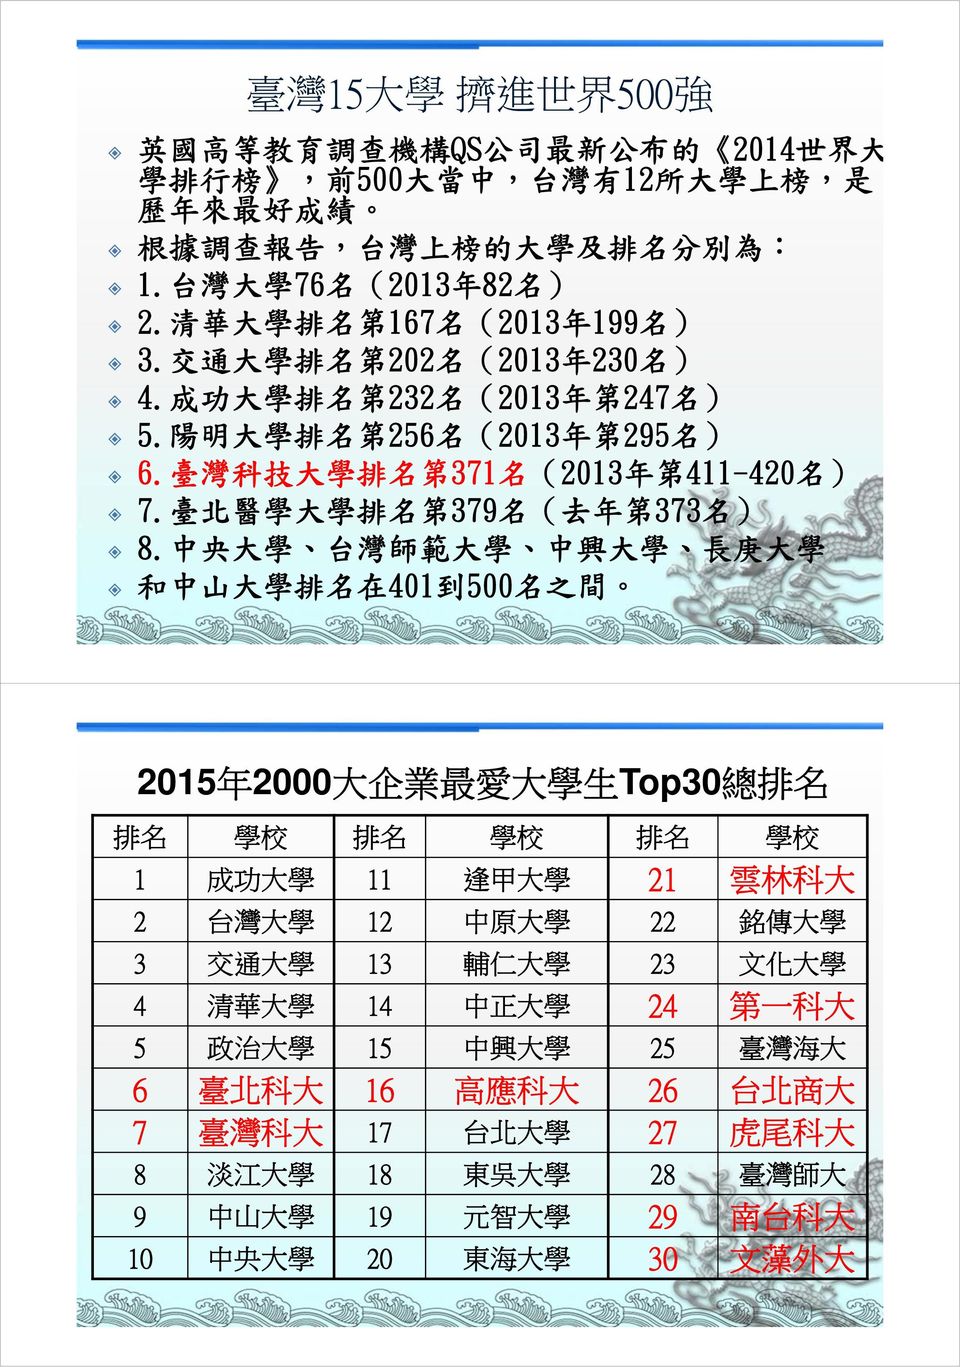 臺 灣 科 技 大 學 排 名 第 371 名 (2013 年 第 411-420 名 ) 7. 臺 北 醫 學 大 學 排 名 第 379 名 ( 去 年 第 373 名 ) 8.